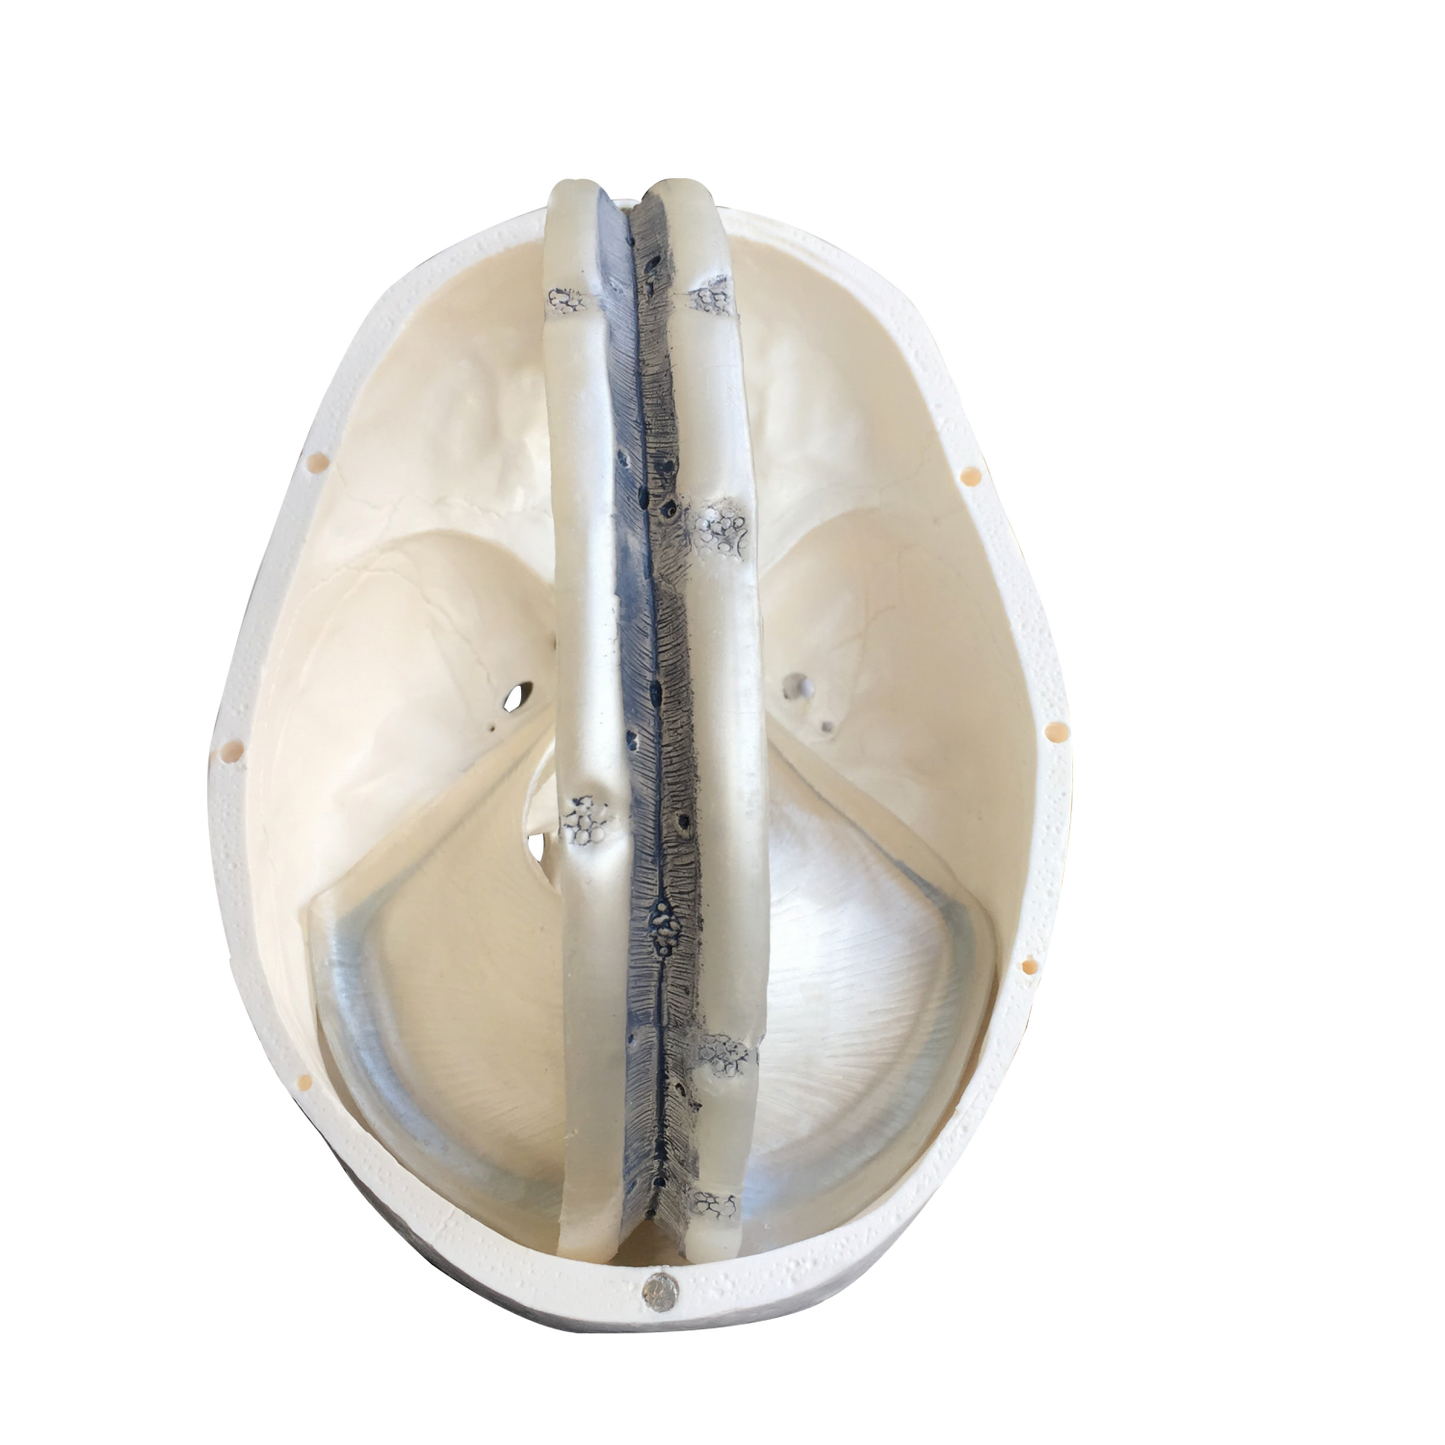 Kraniemodel Inkl. de durale septa f.eks. falx cerebri fra dura mater